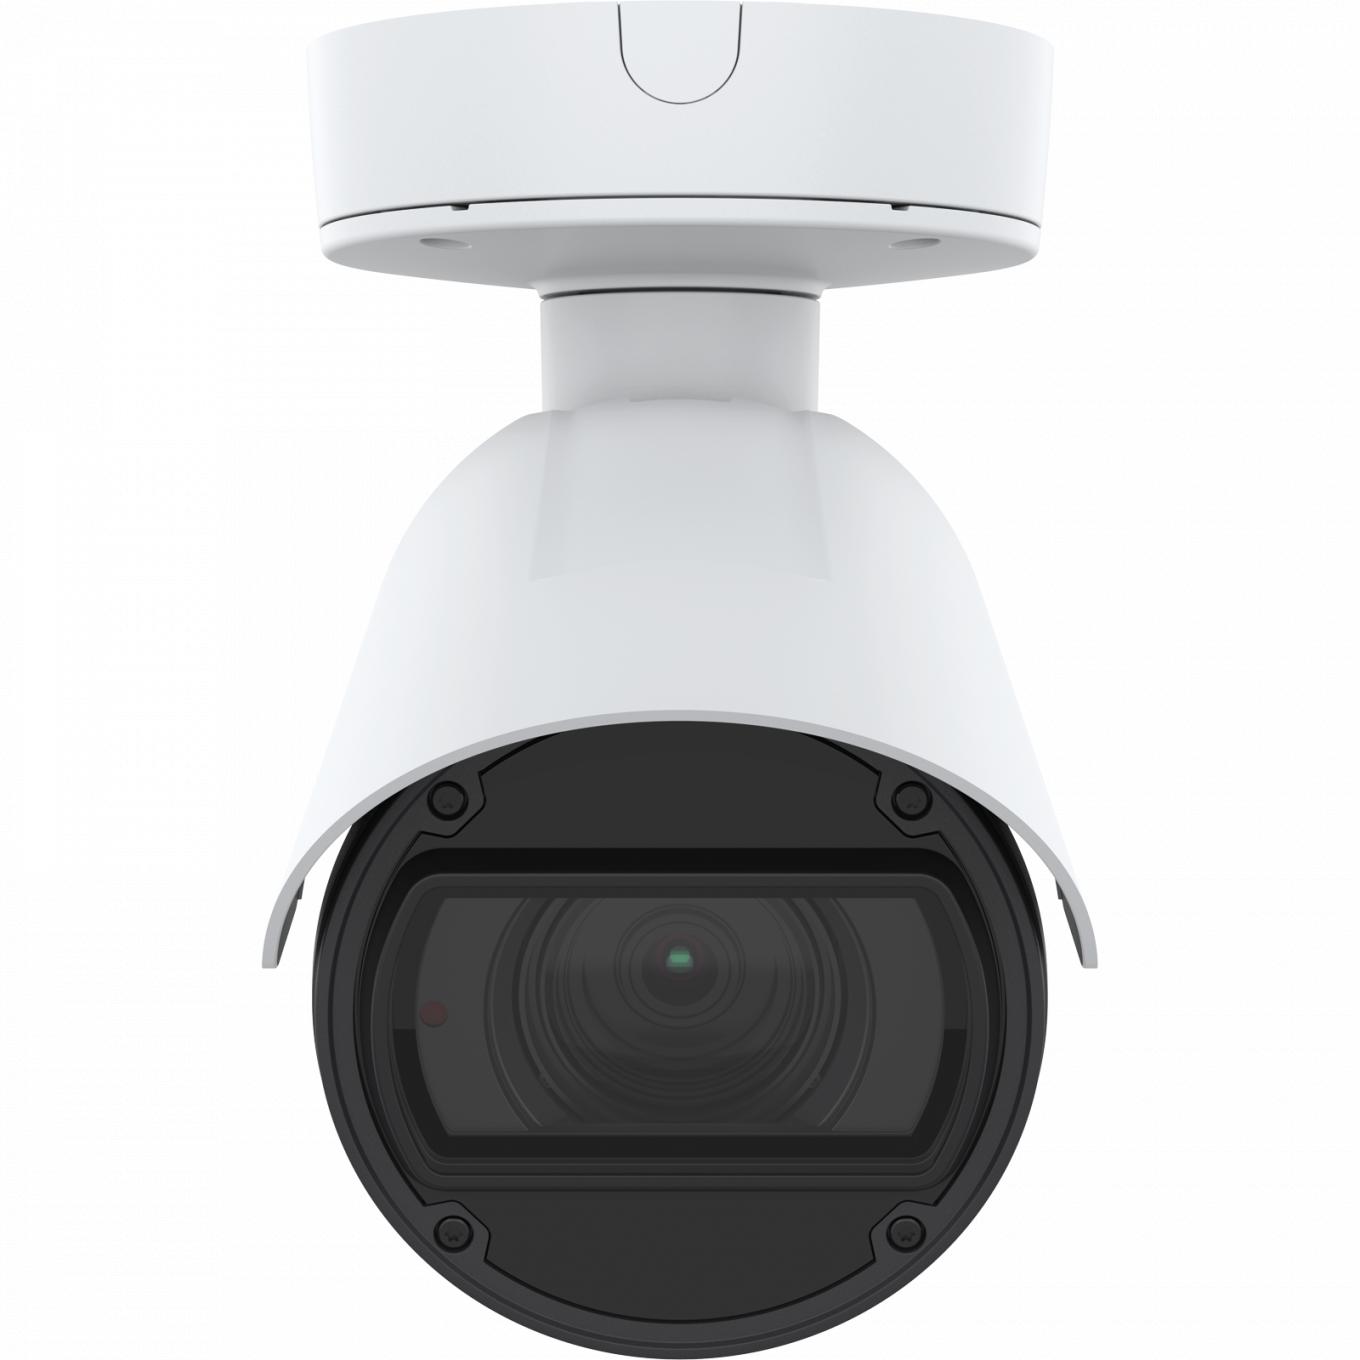 La caméra IP AXIS Q1785-LE dispose d'OptimizedIR. Le produit est vu de face.